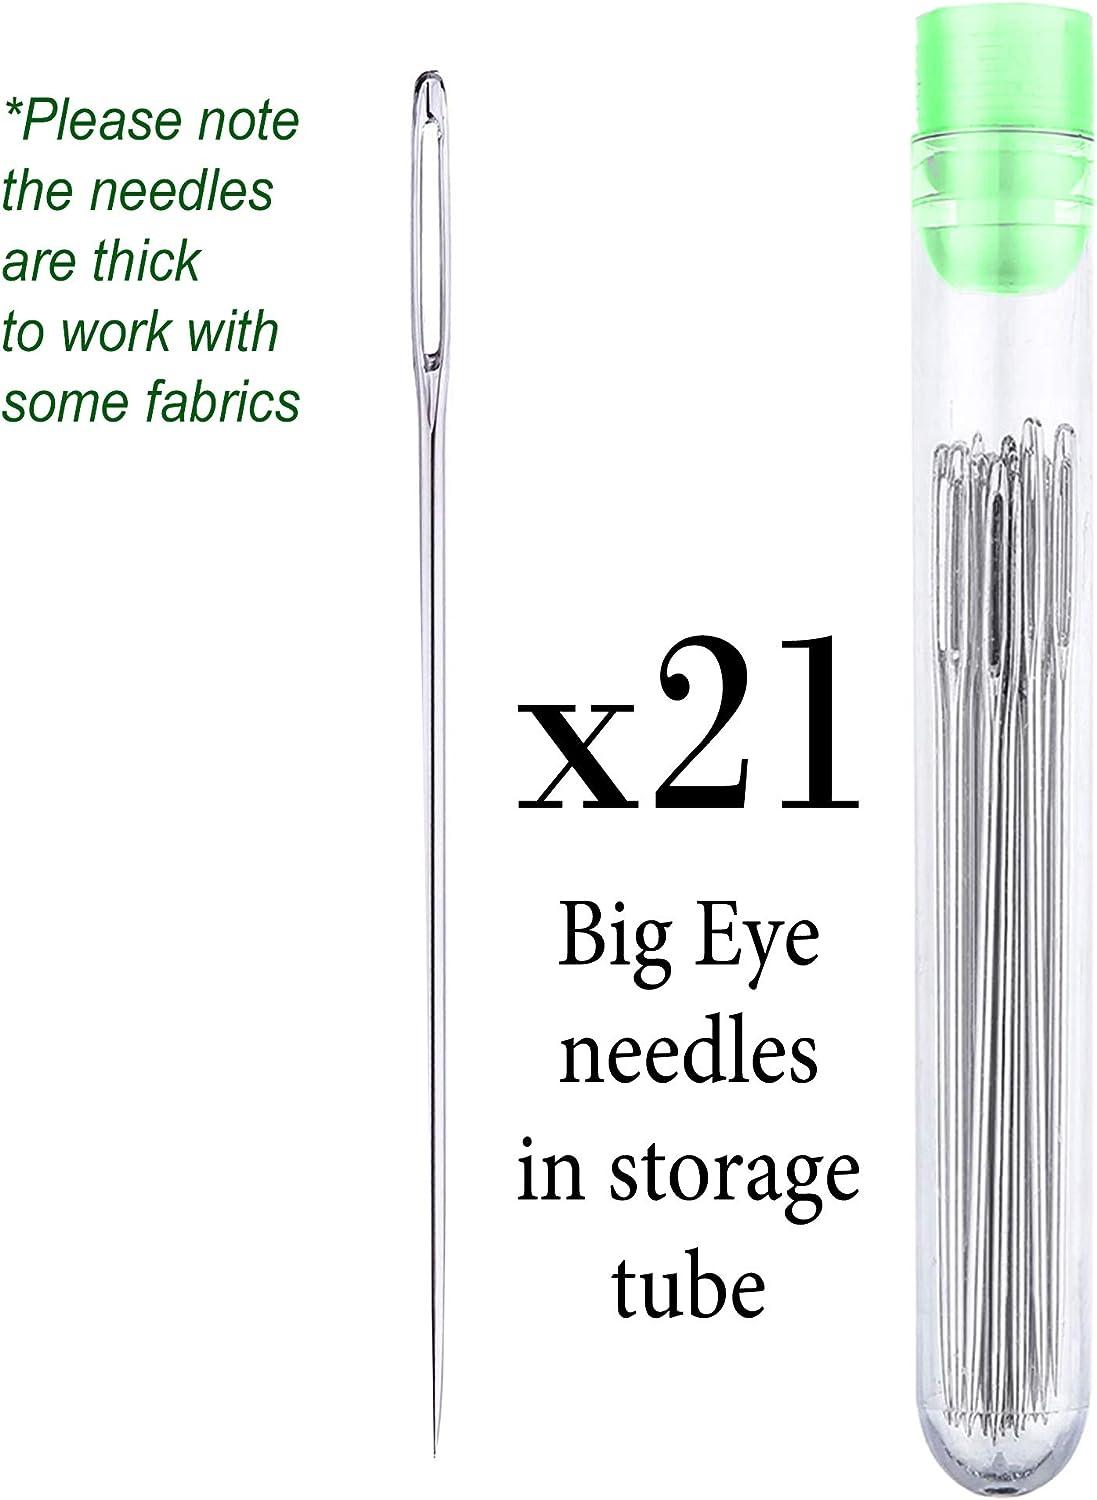 Atopoler 25pcs Big Eye Stitching Needles with Storage Tube